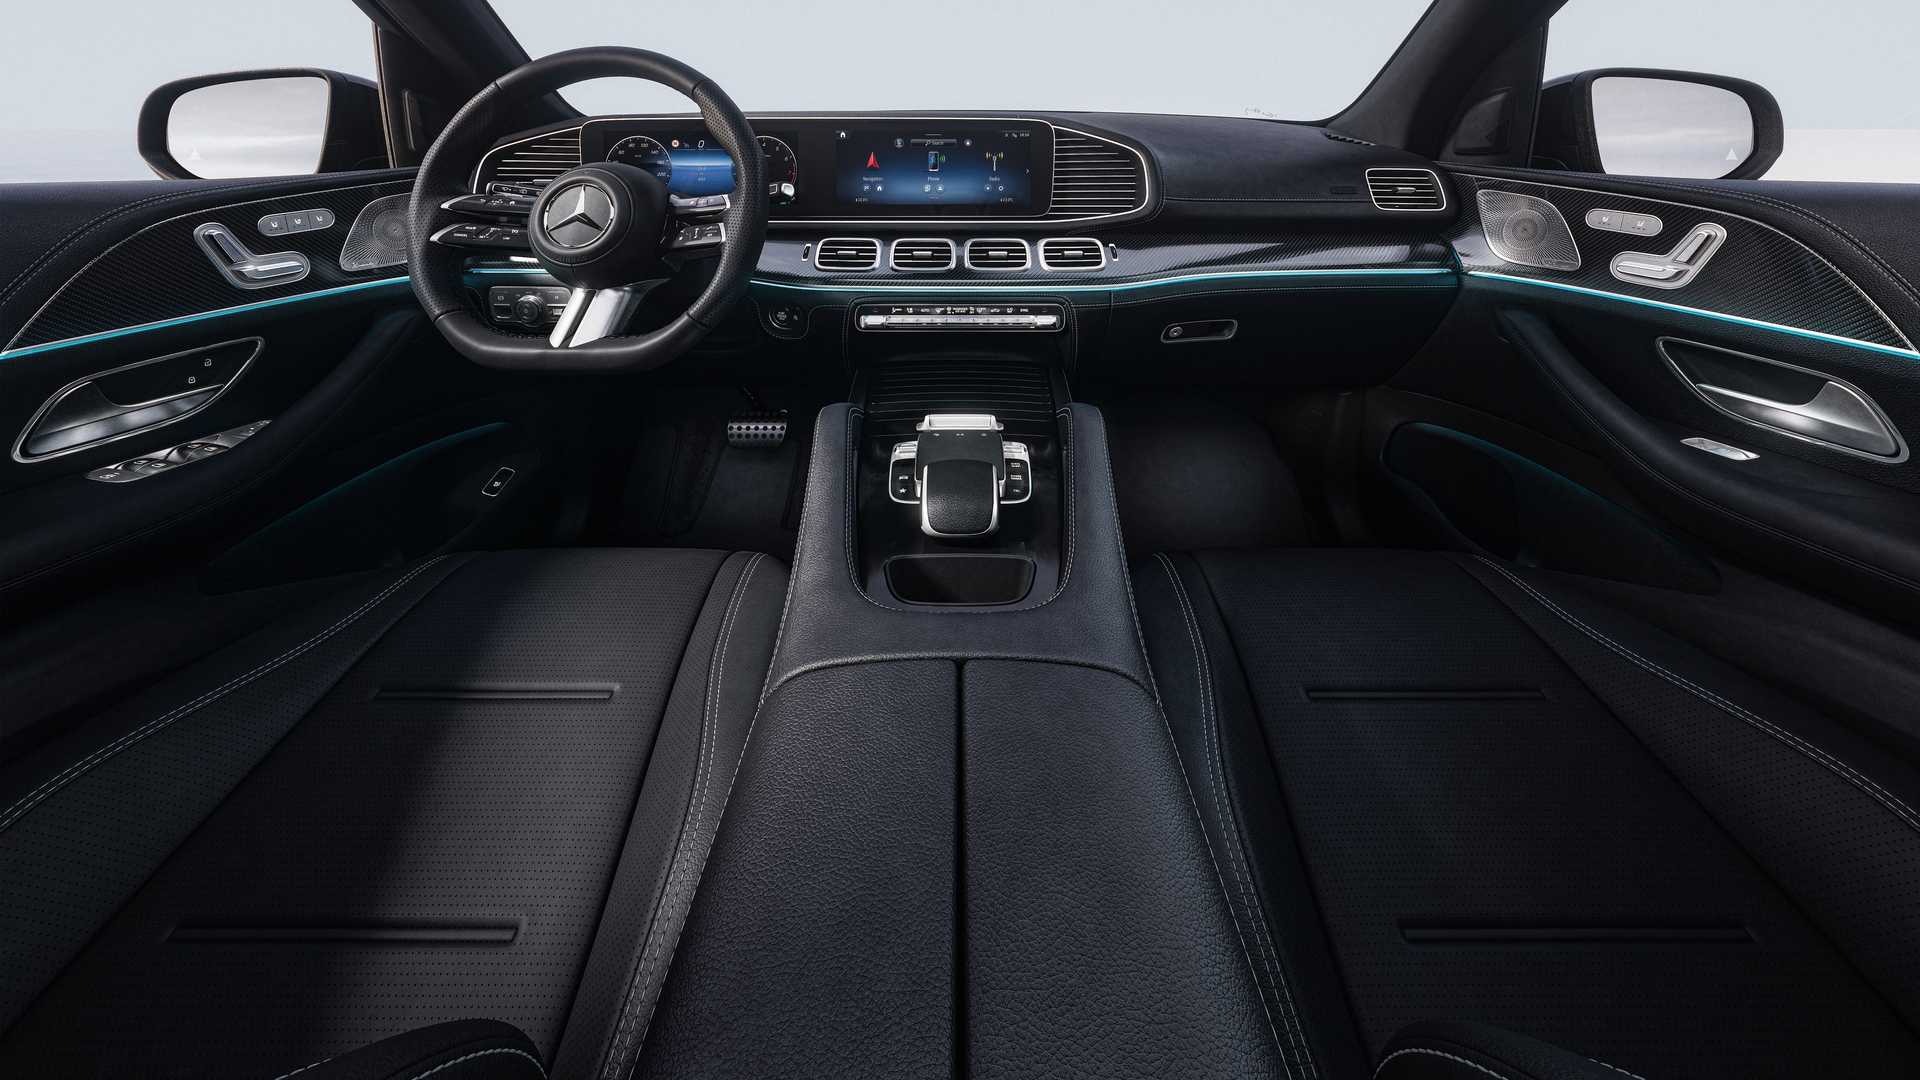 Makyajlı Mercedes GLE ve GLE Coupe tanıtıldı